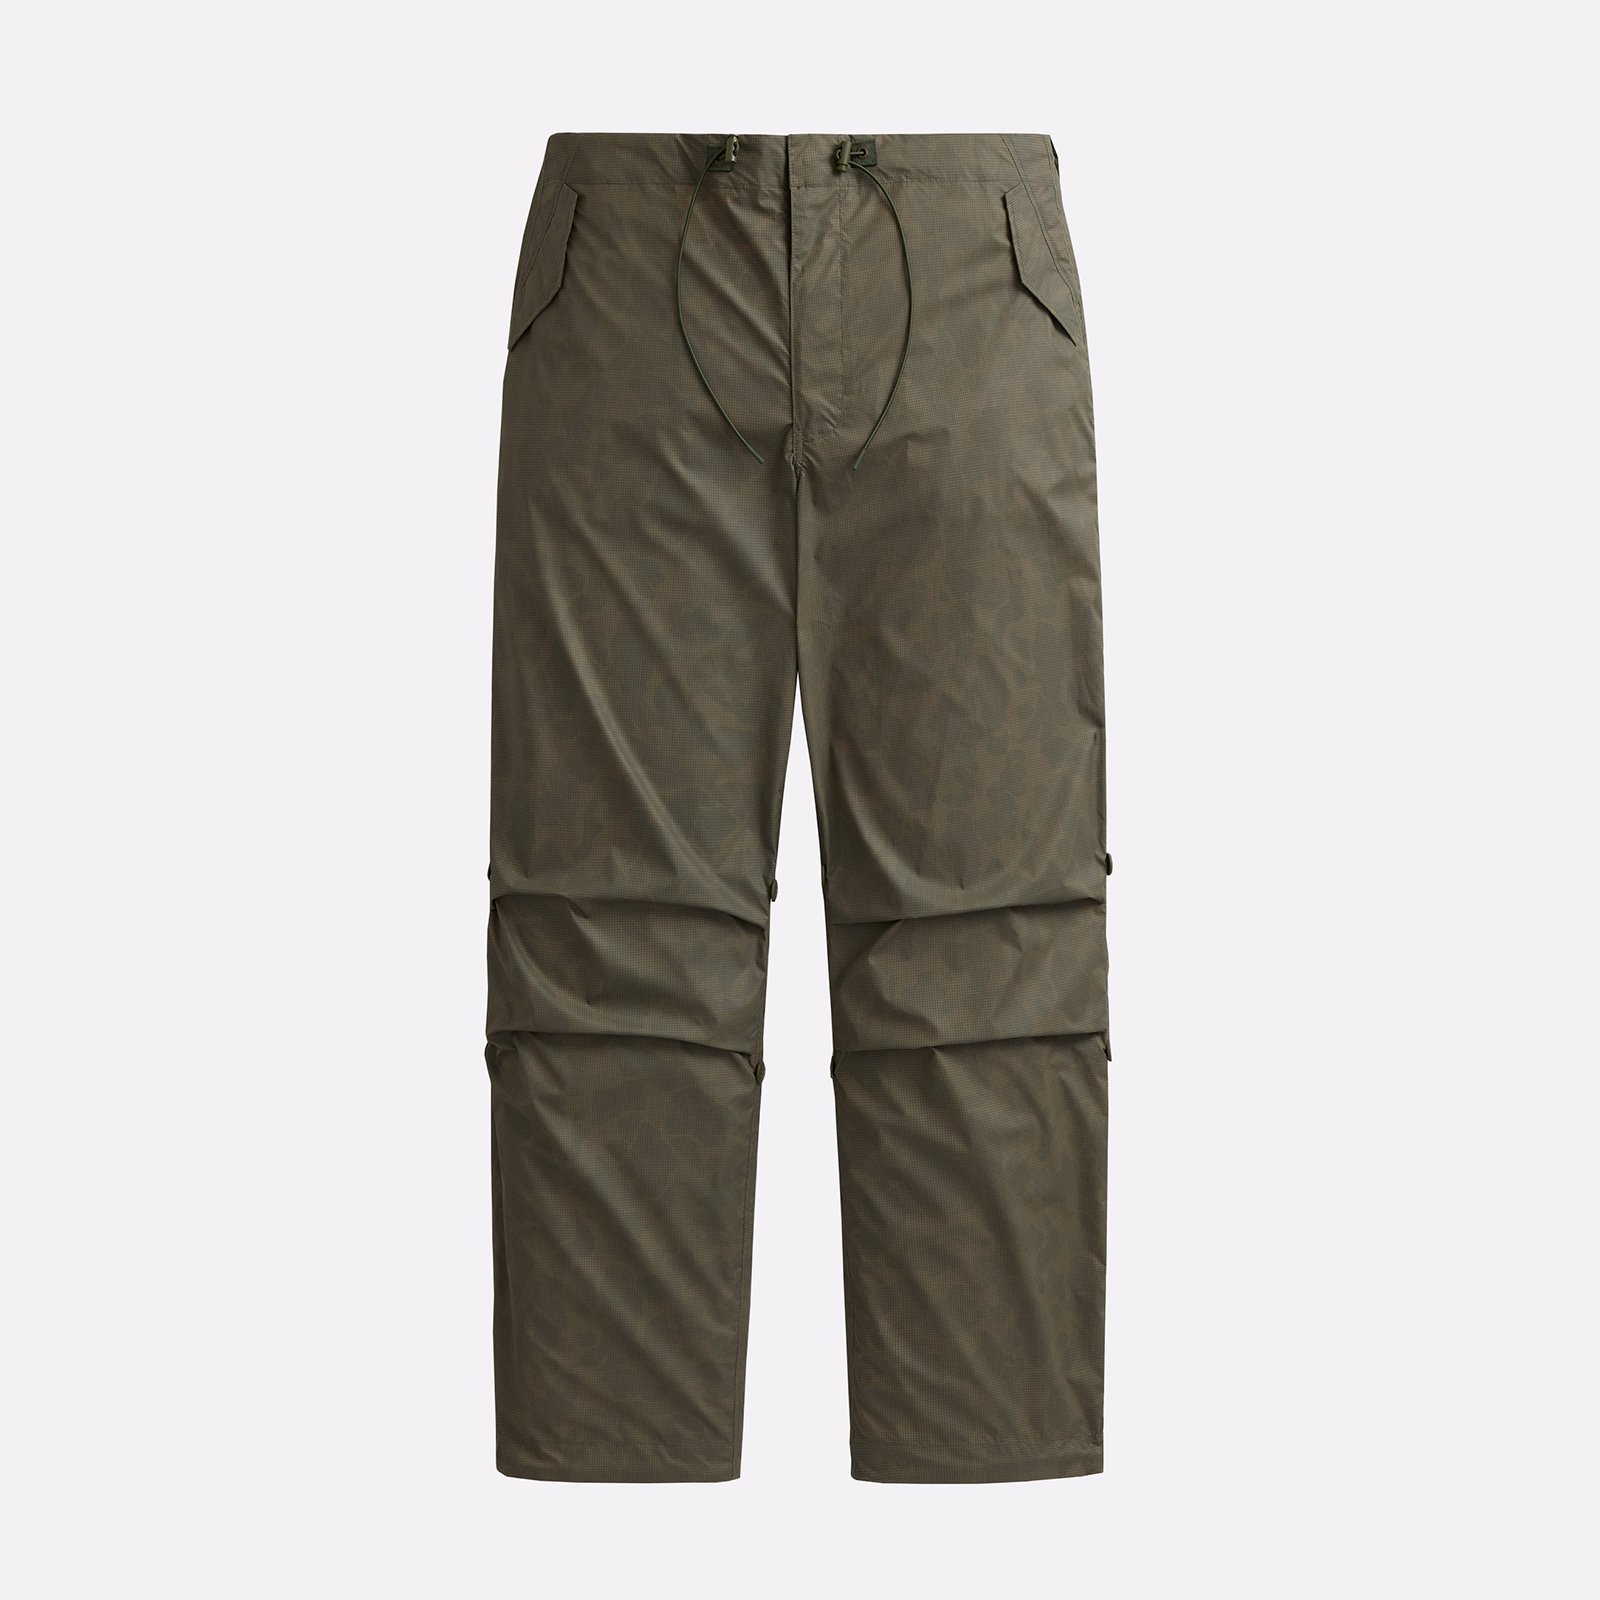 мужские брюки Alpha Industries Ripstop Parachute Pants  (UBU54001C1-OG-107-green)  - цена, описание, фото 1